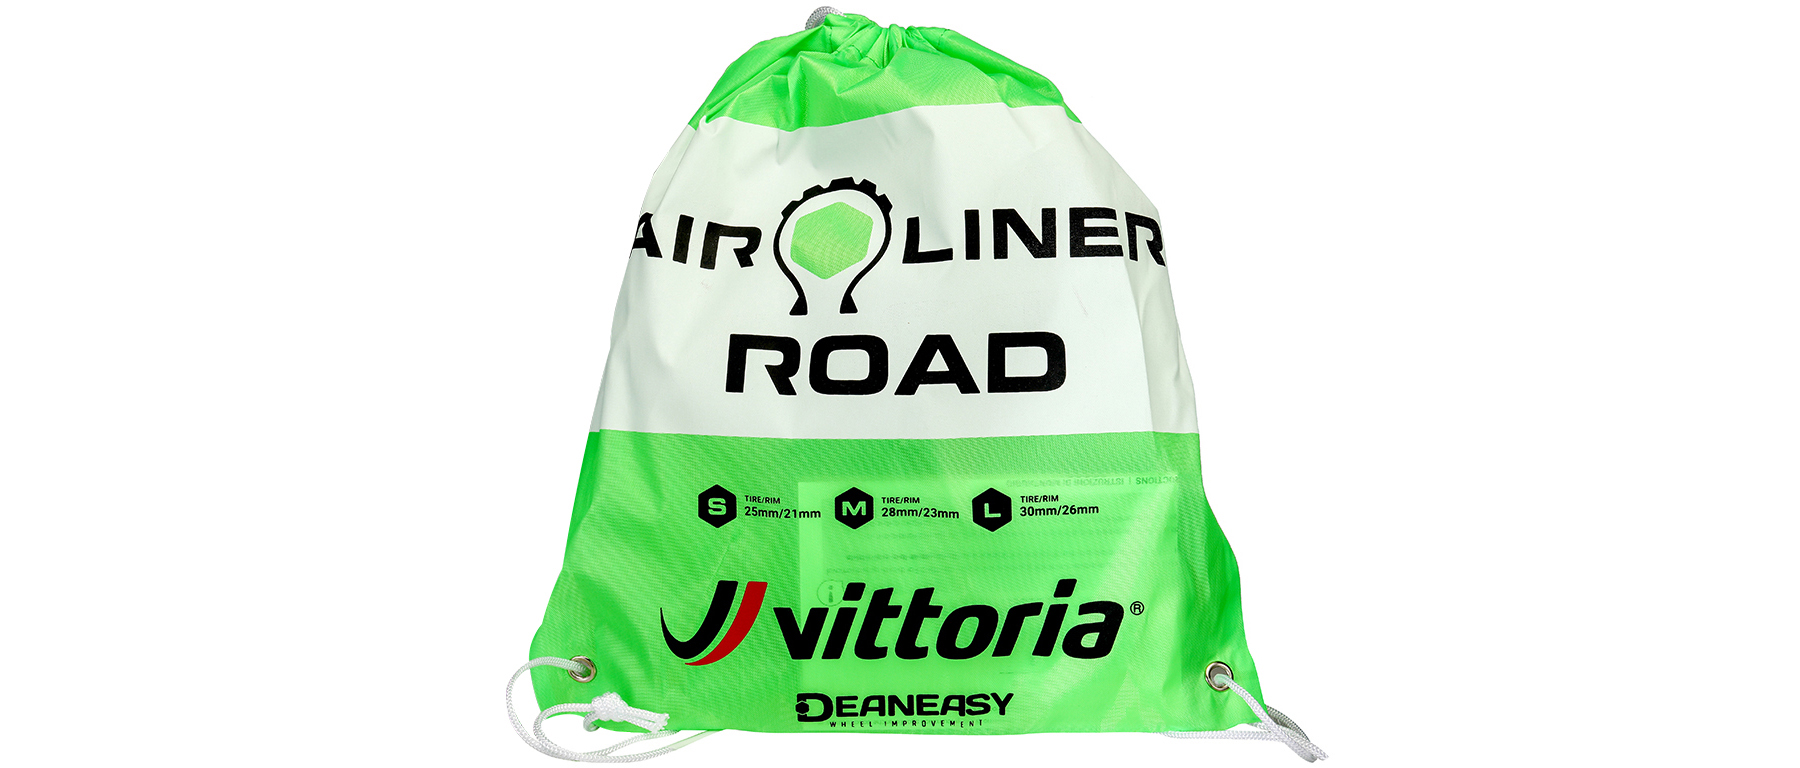 Vittoria Air-Liner Tire Insert Road